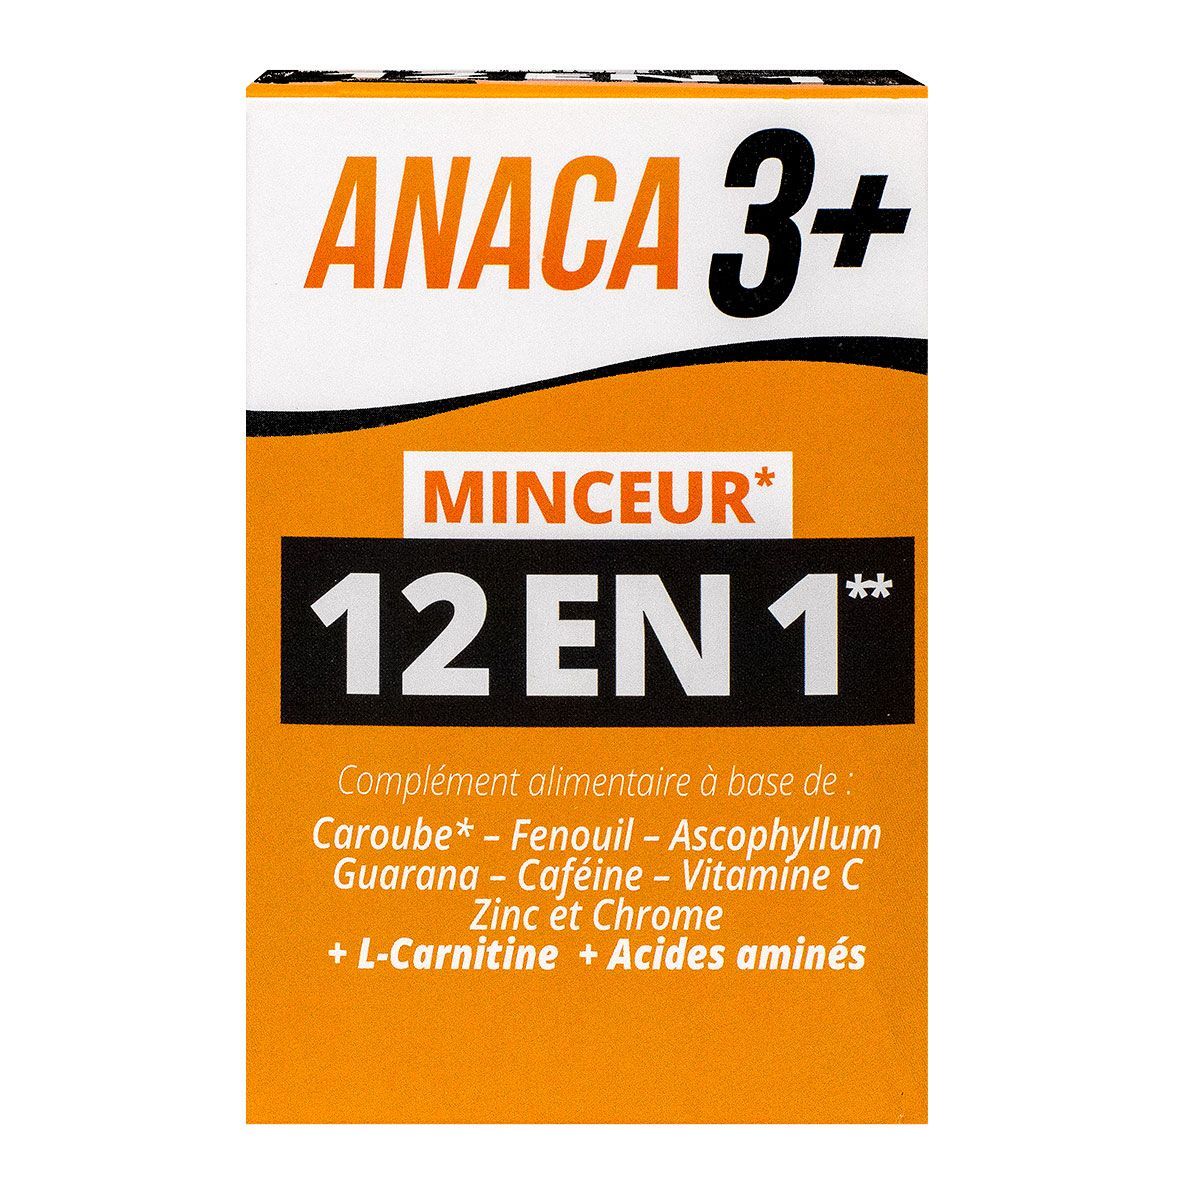 Anaca3+ minceur 12en1 120 gélules est un complément alimentaire